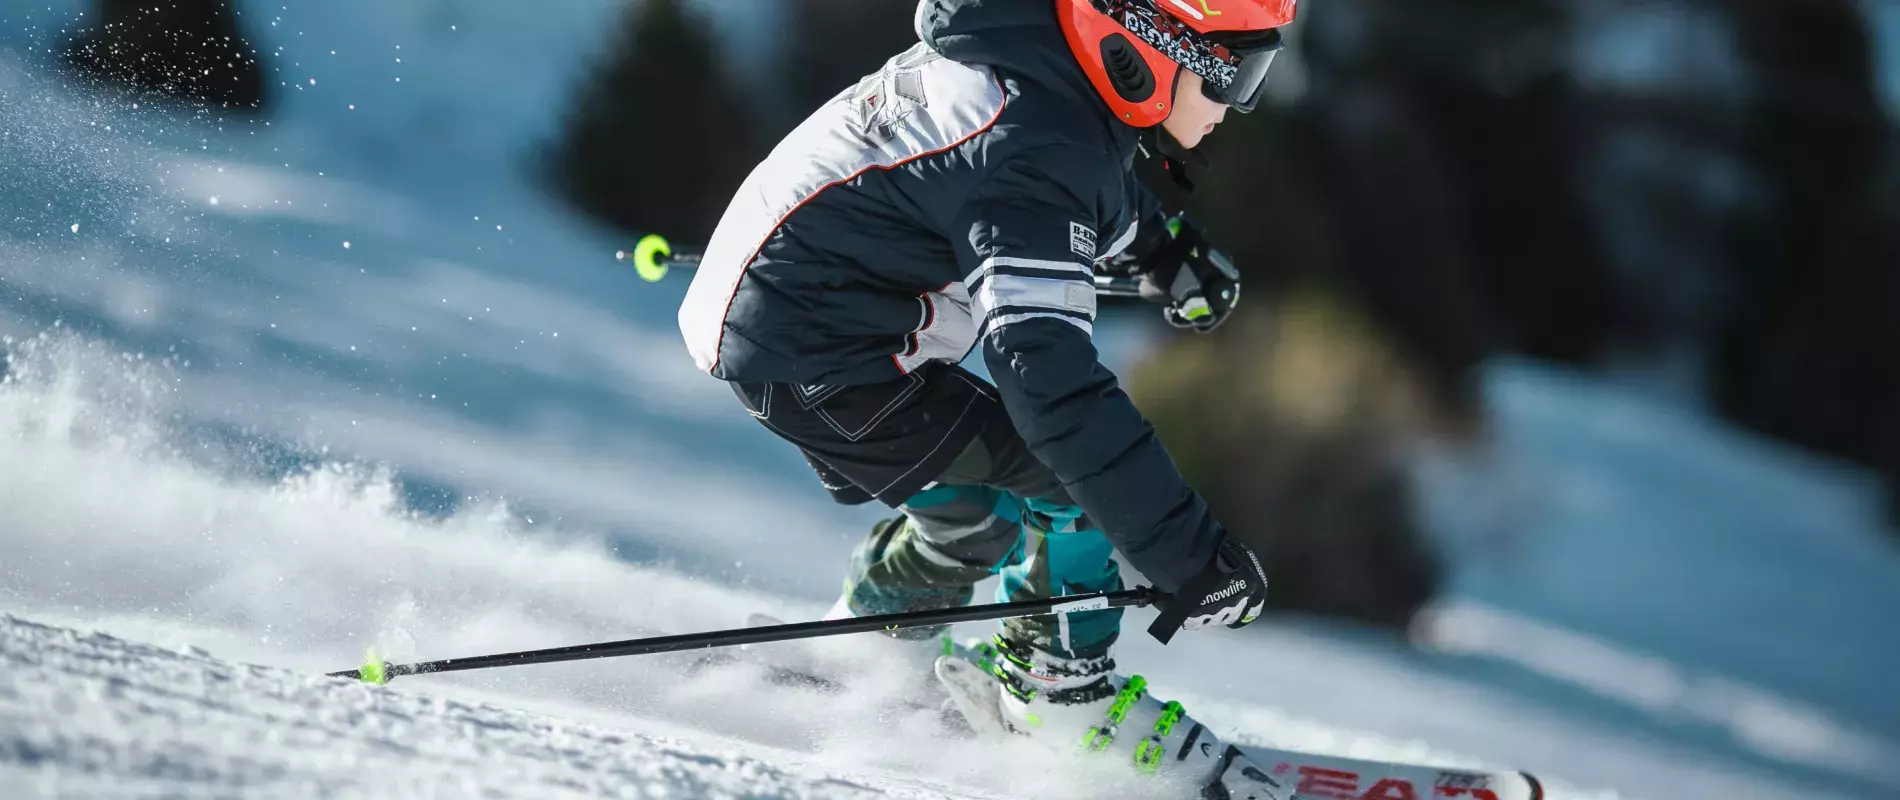 Ski : évitez les blessures